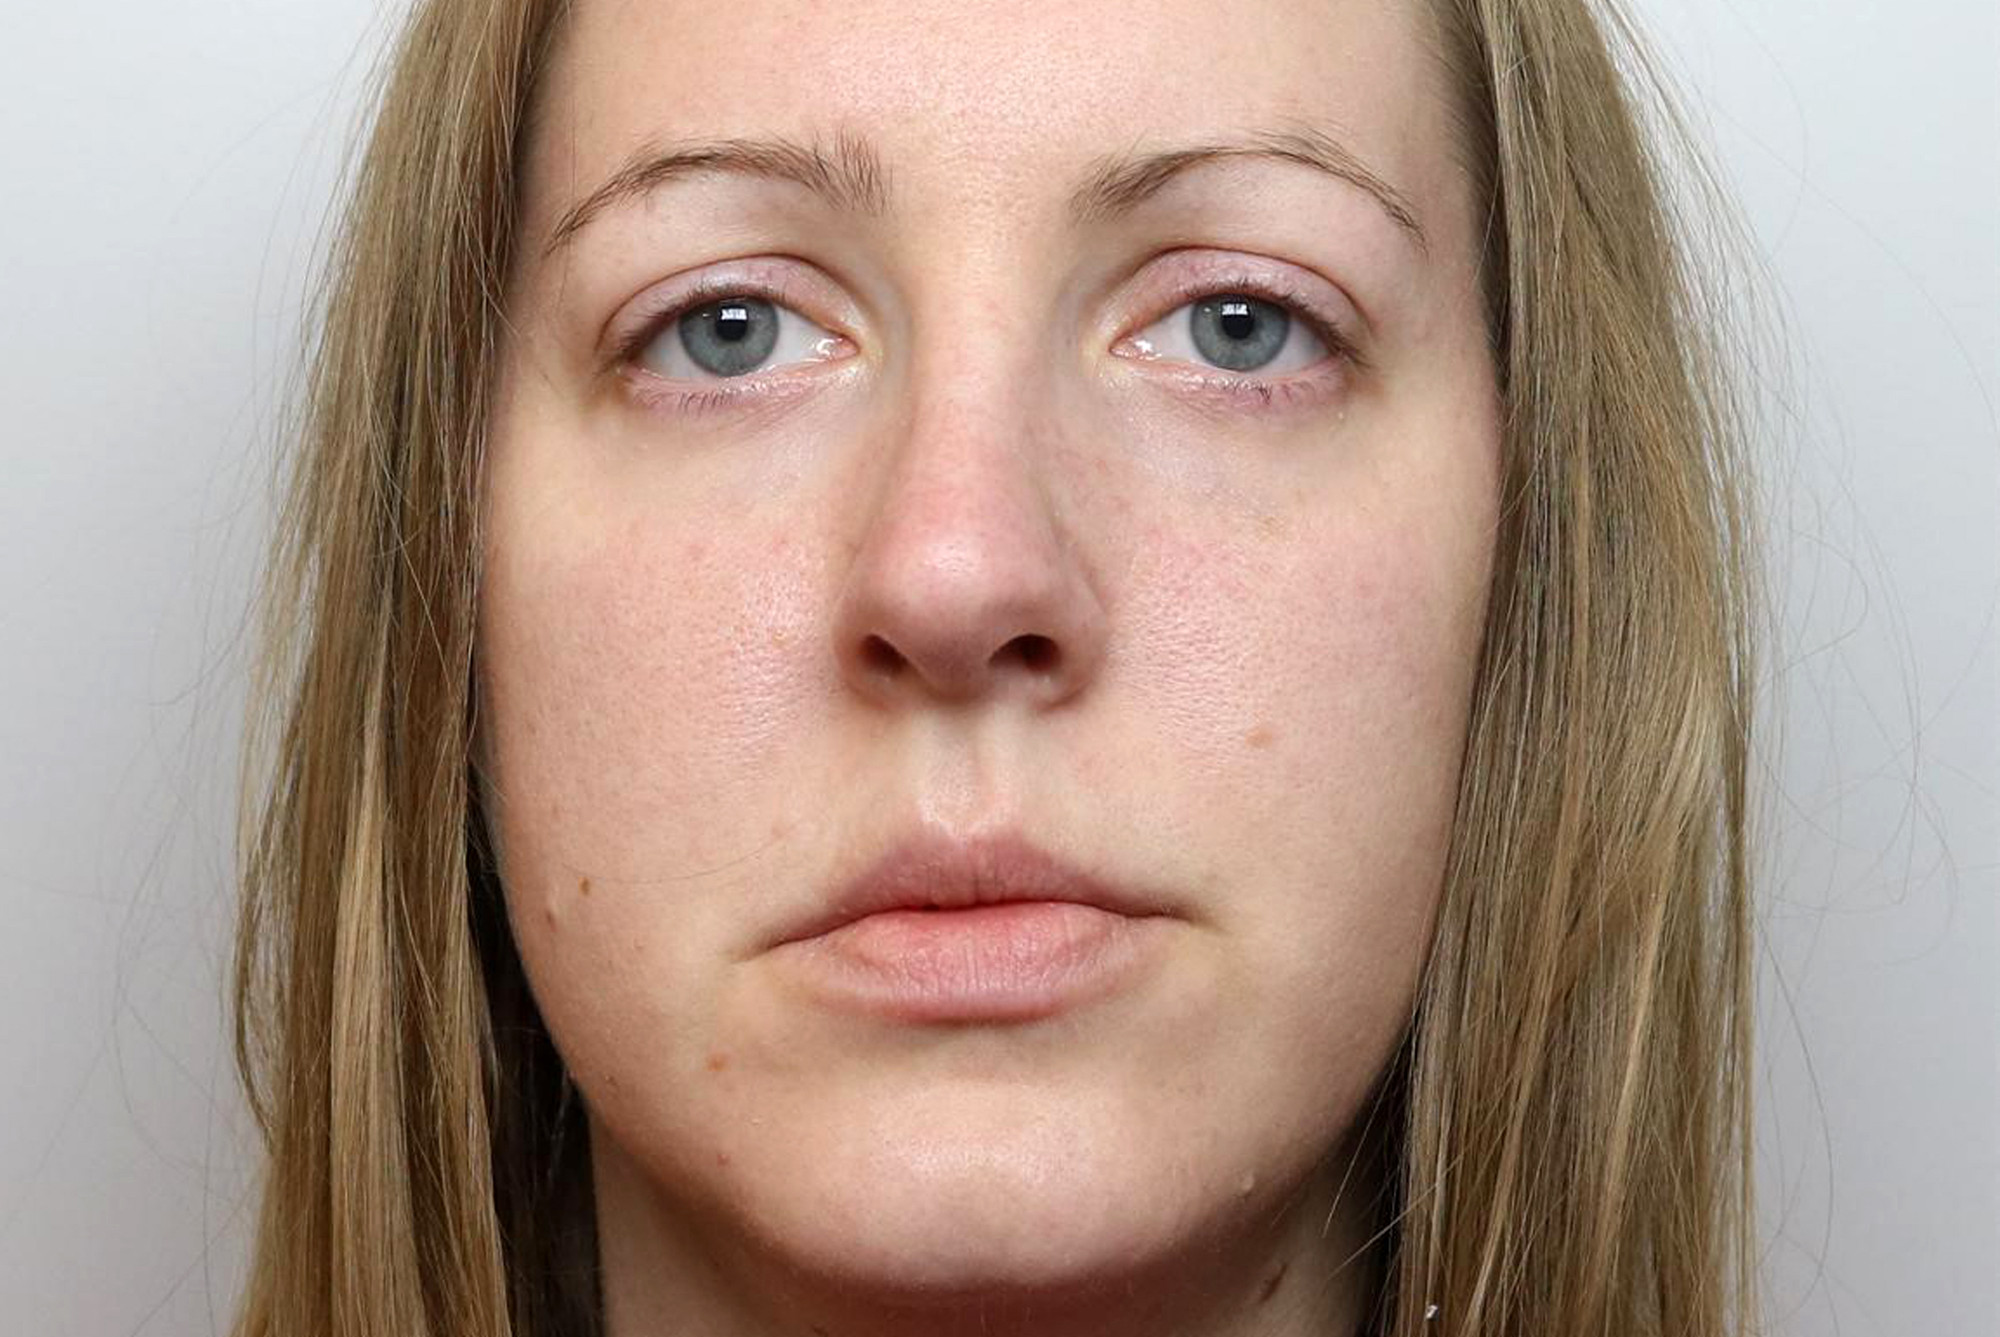 Életfogytiglanra ítélték a brit nővért, aki hét csecsemőt gyilkolt meg